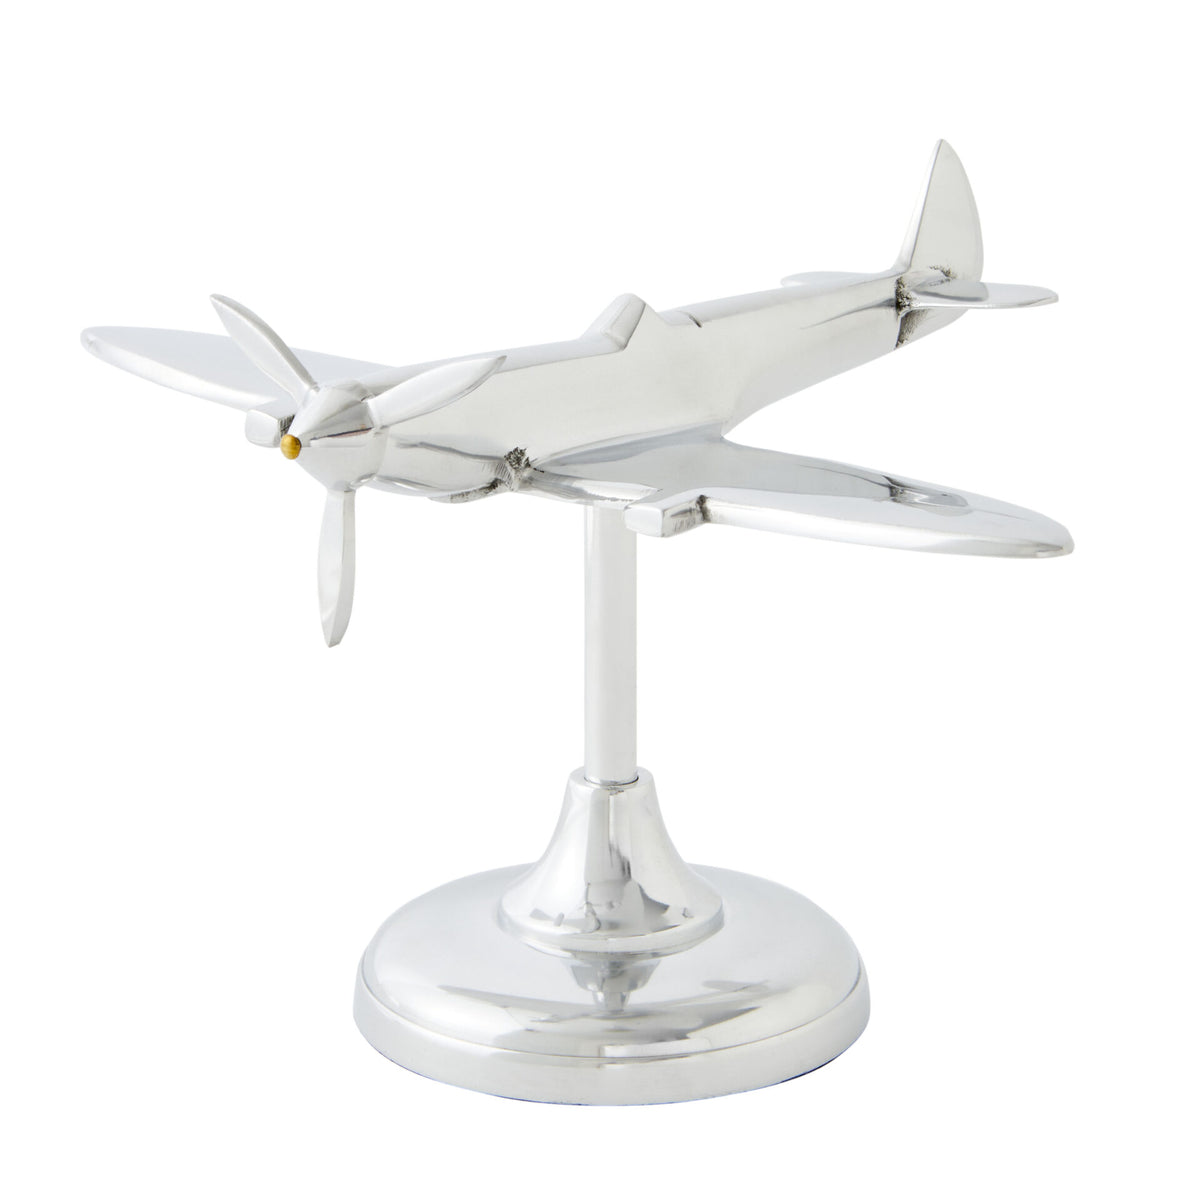 Spitfire Plane Table Ornament in Aluminium - Silver - Notbrand